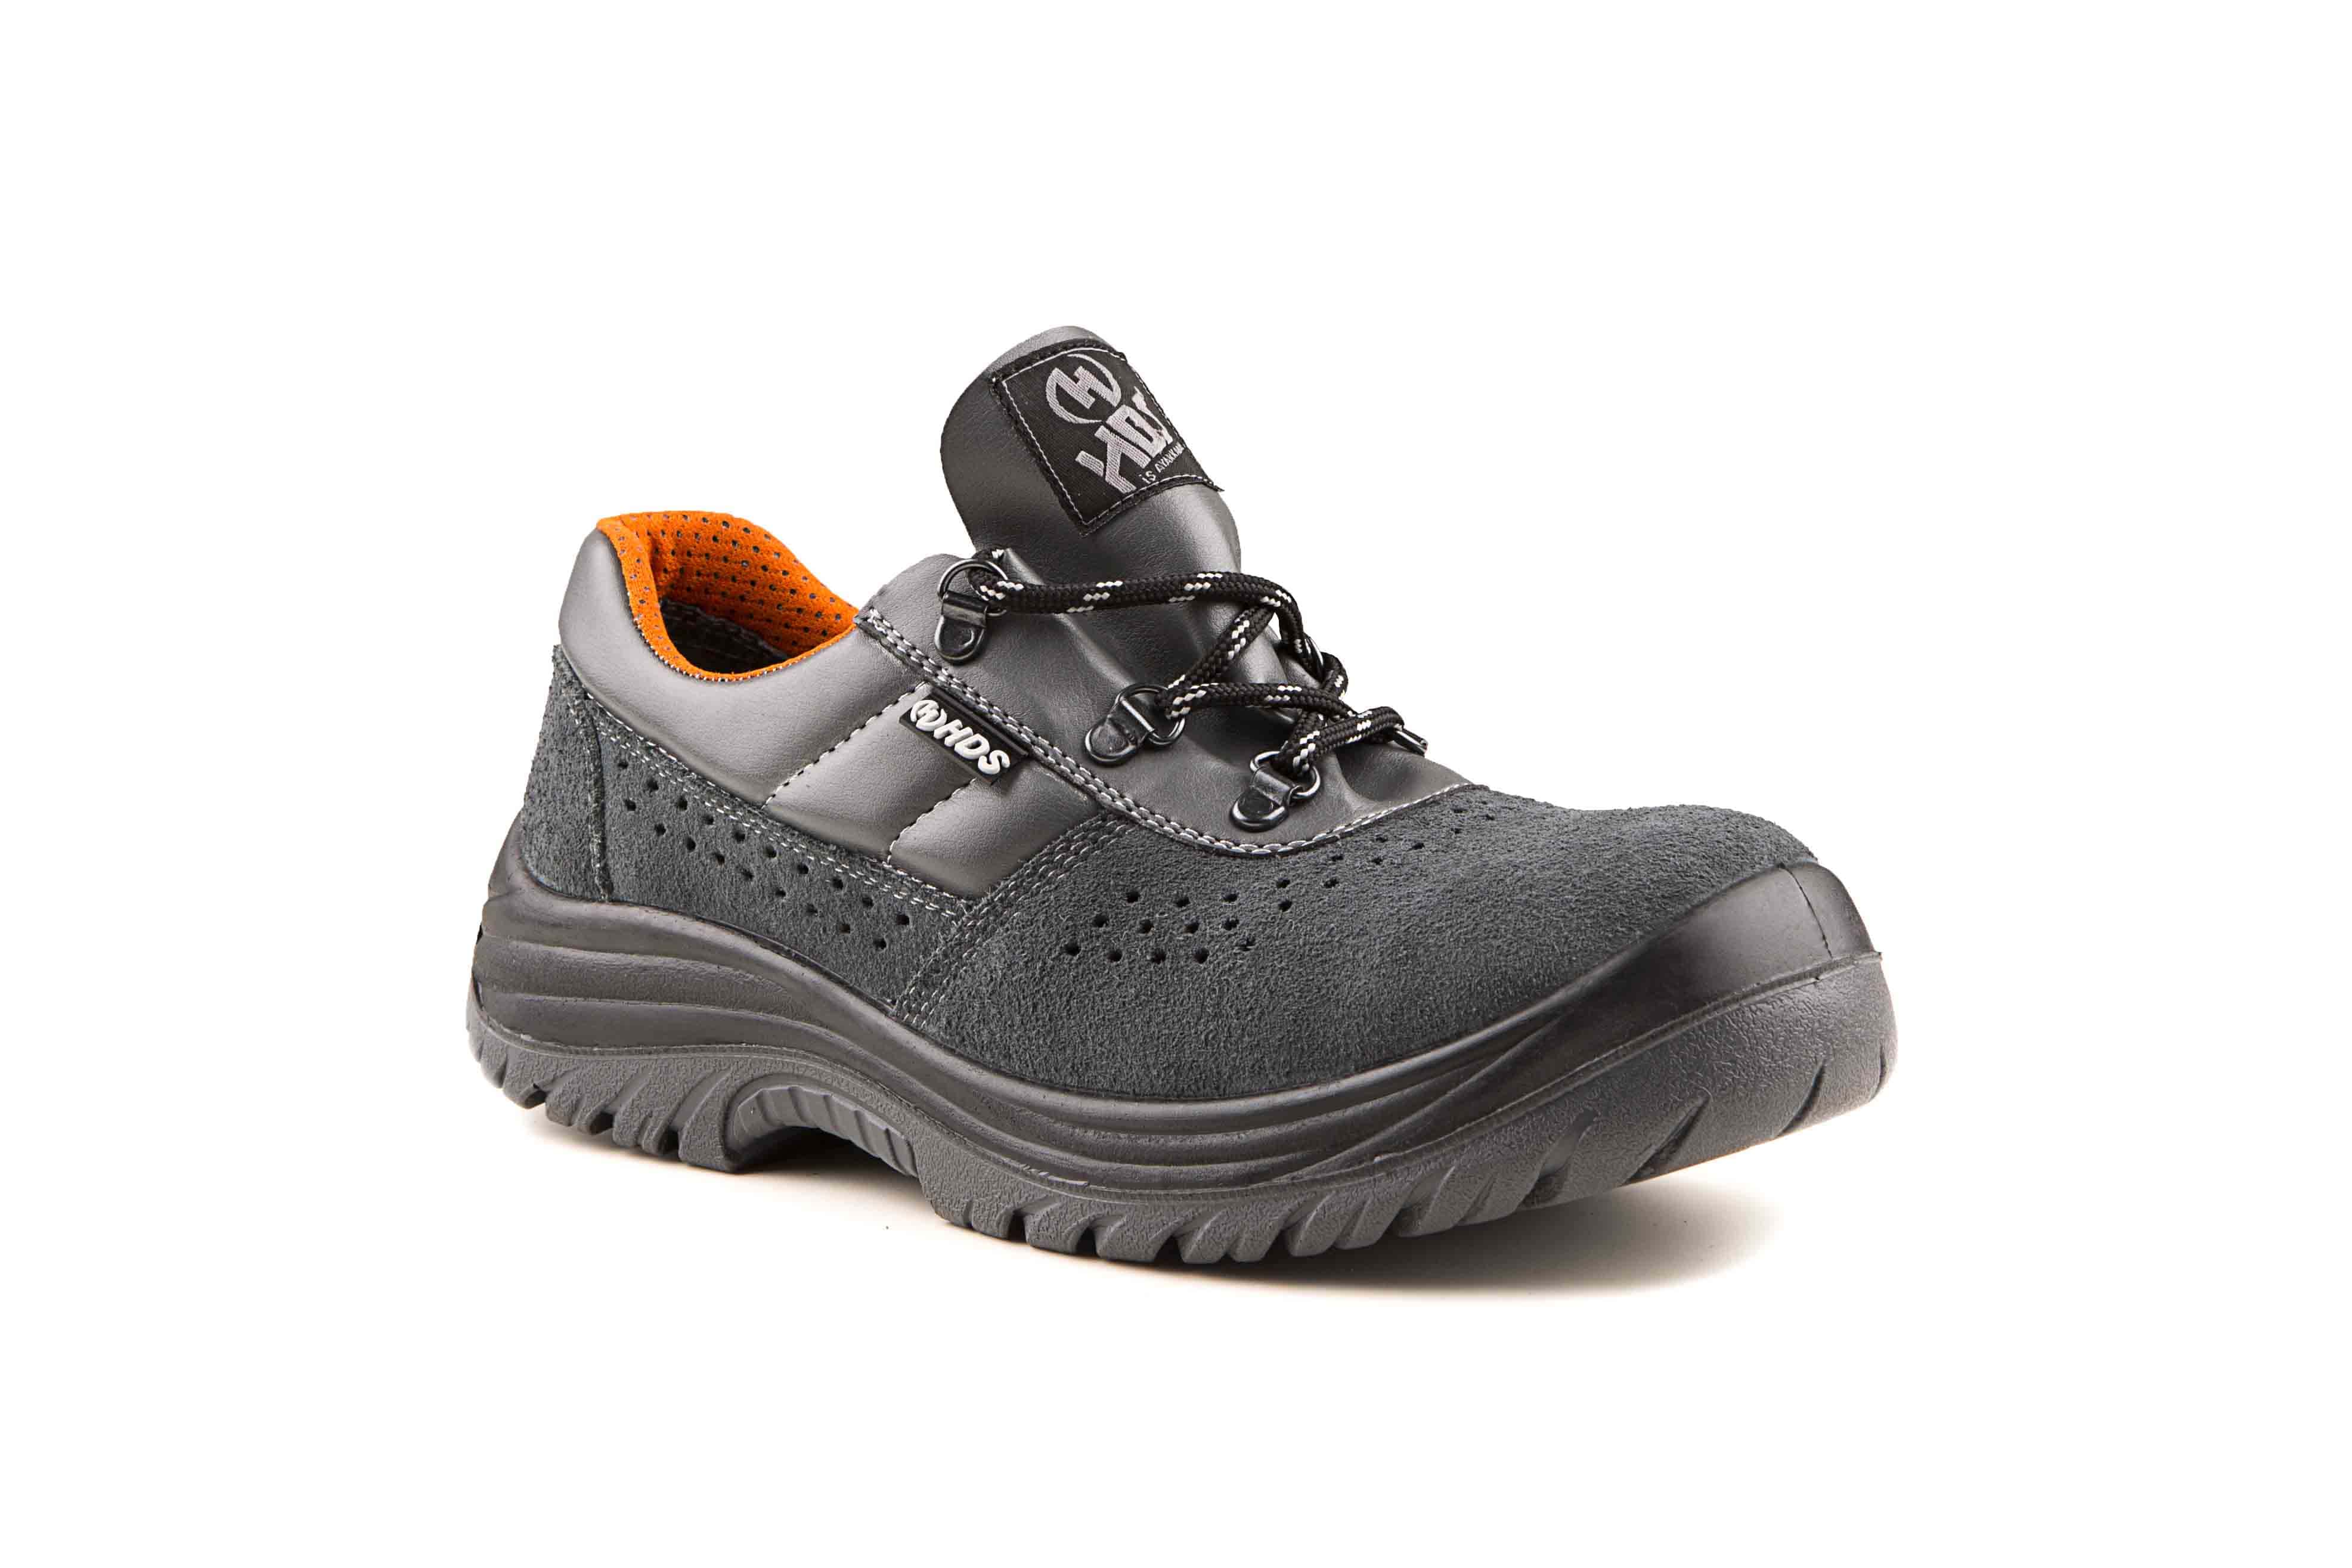 HDS İş Güvenlik Ayakkabıları, 116 S Modeli